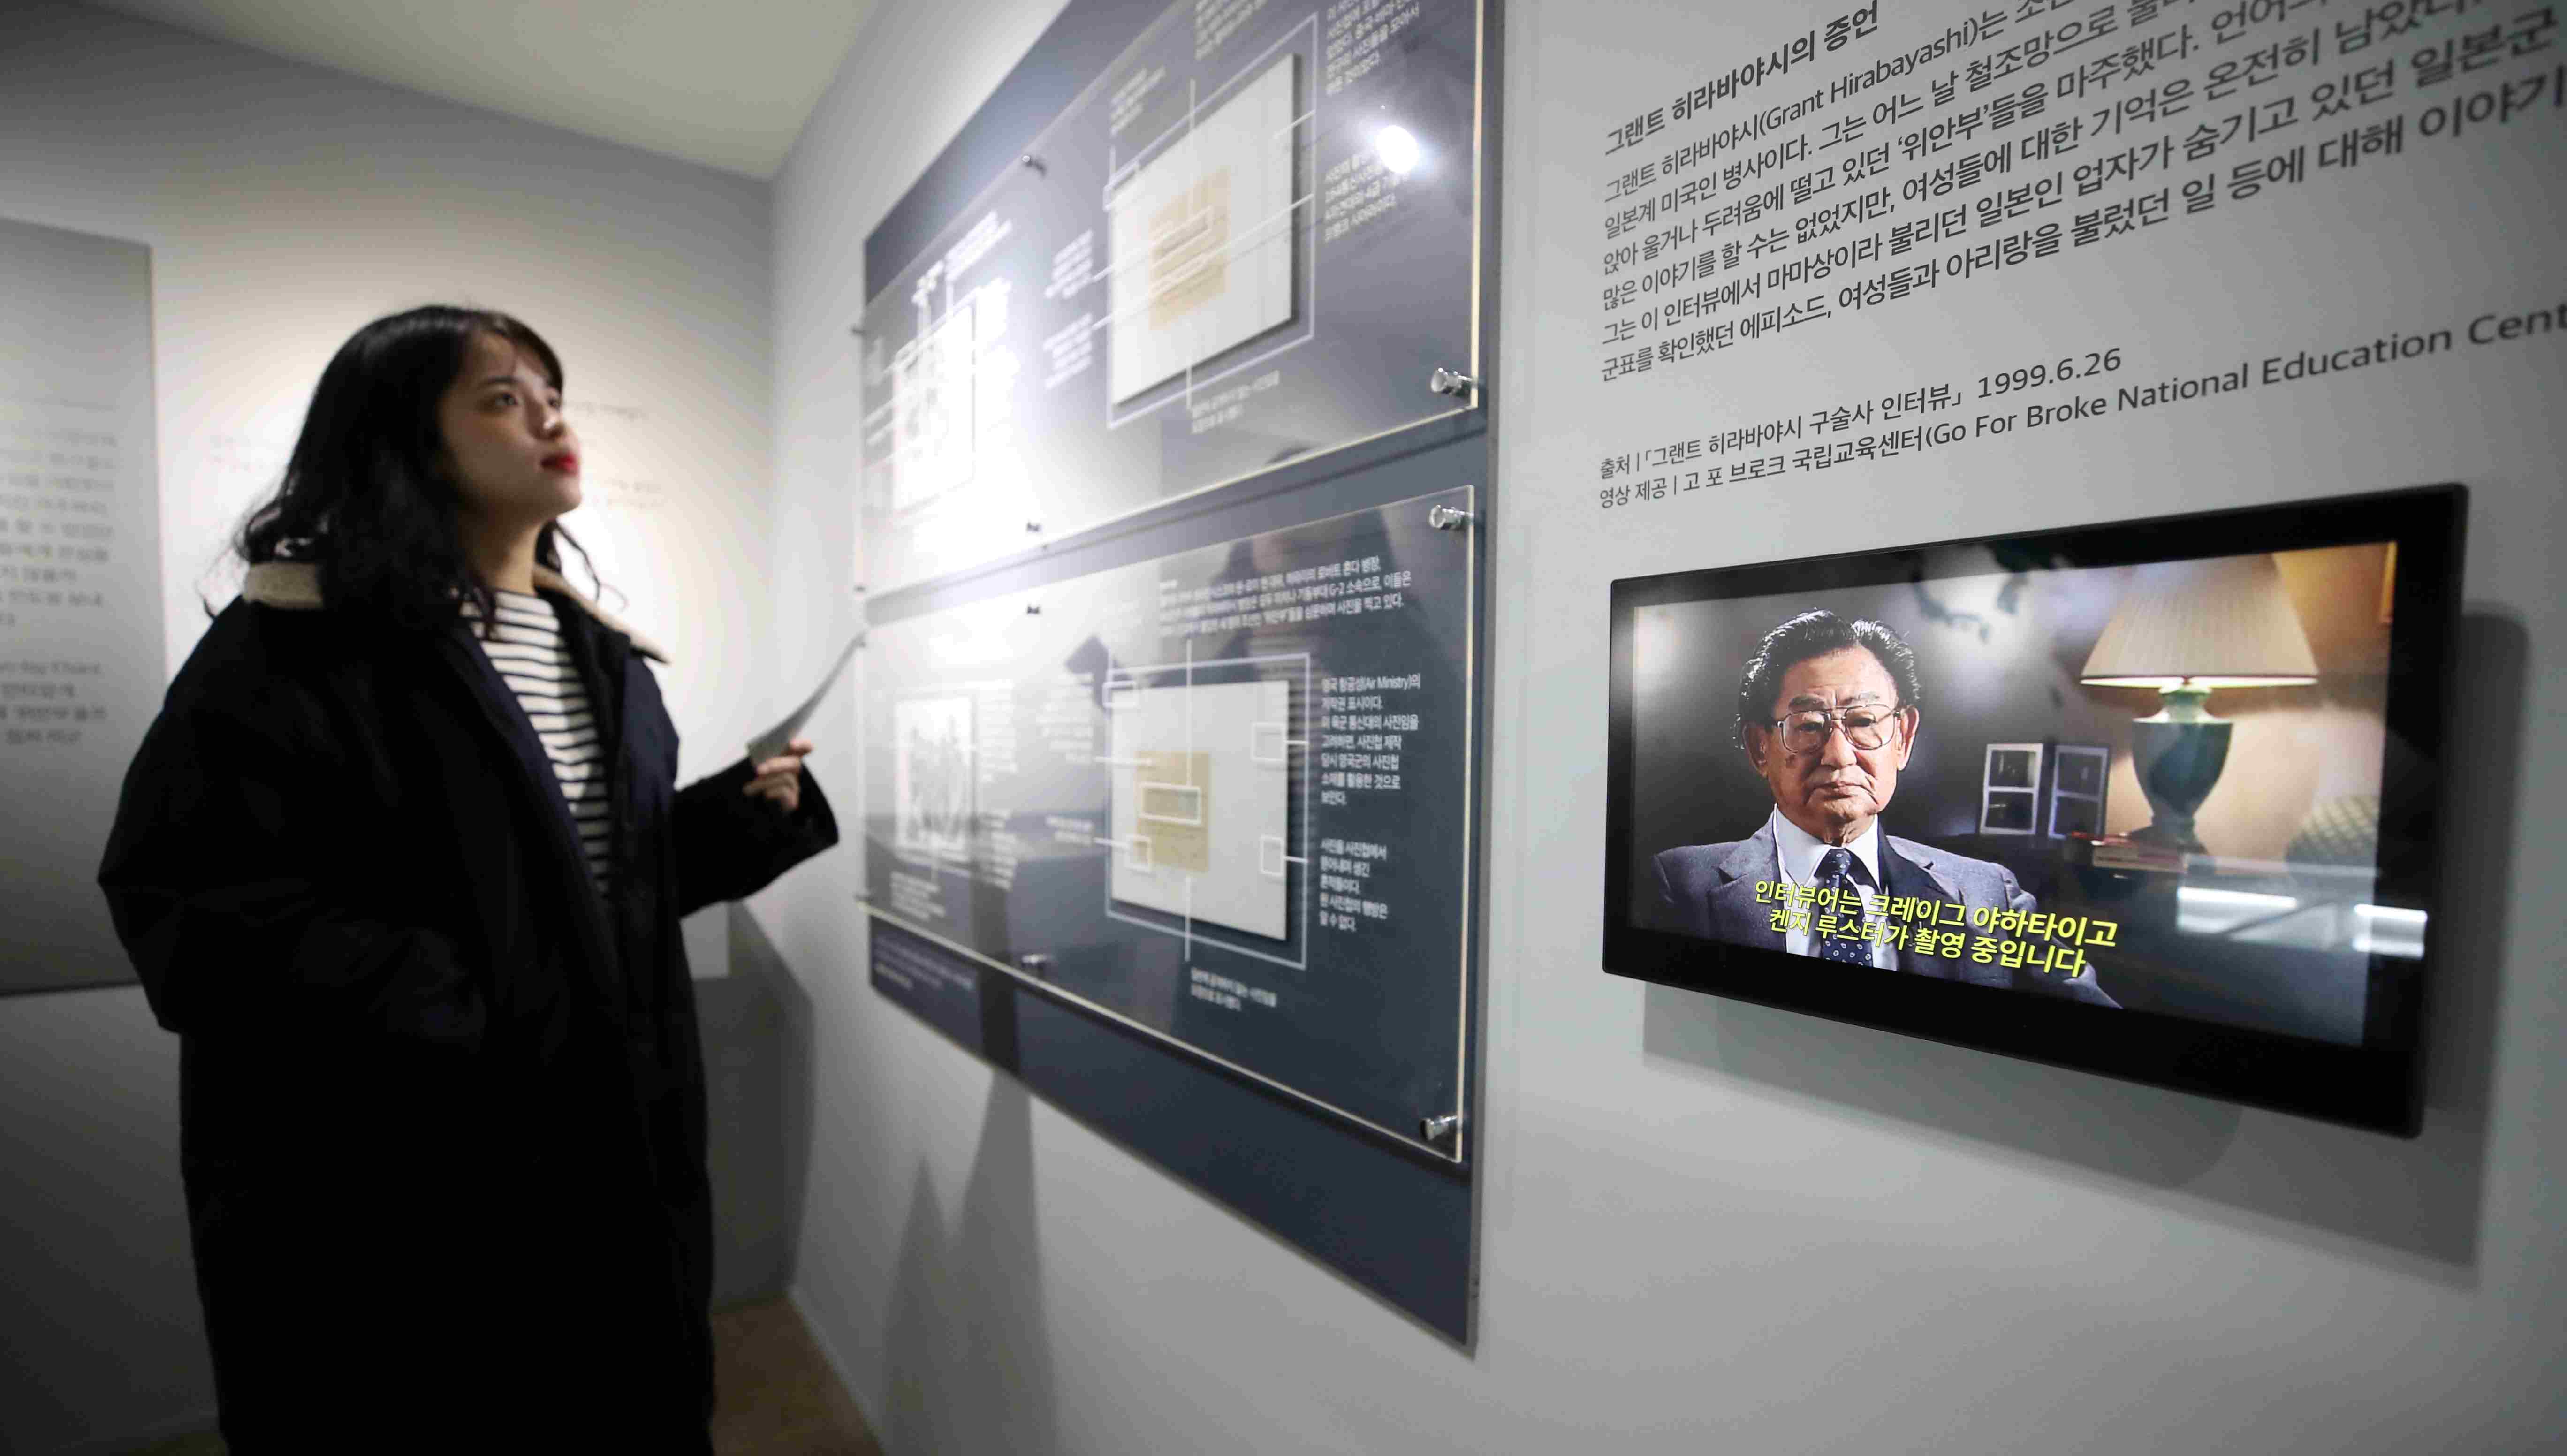 不容忘却的历史！韩国首尔举办“慰安妇”图片展-搜狐大视野-搜狐新闻